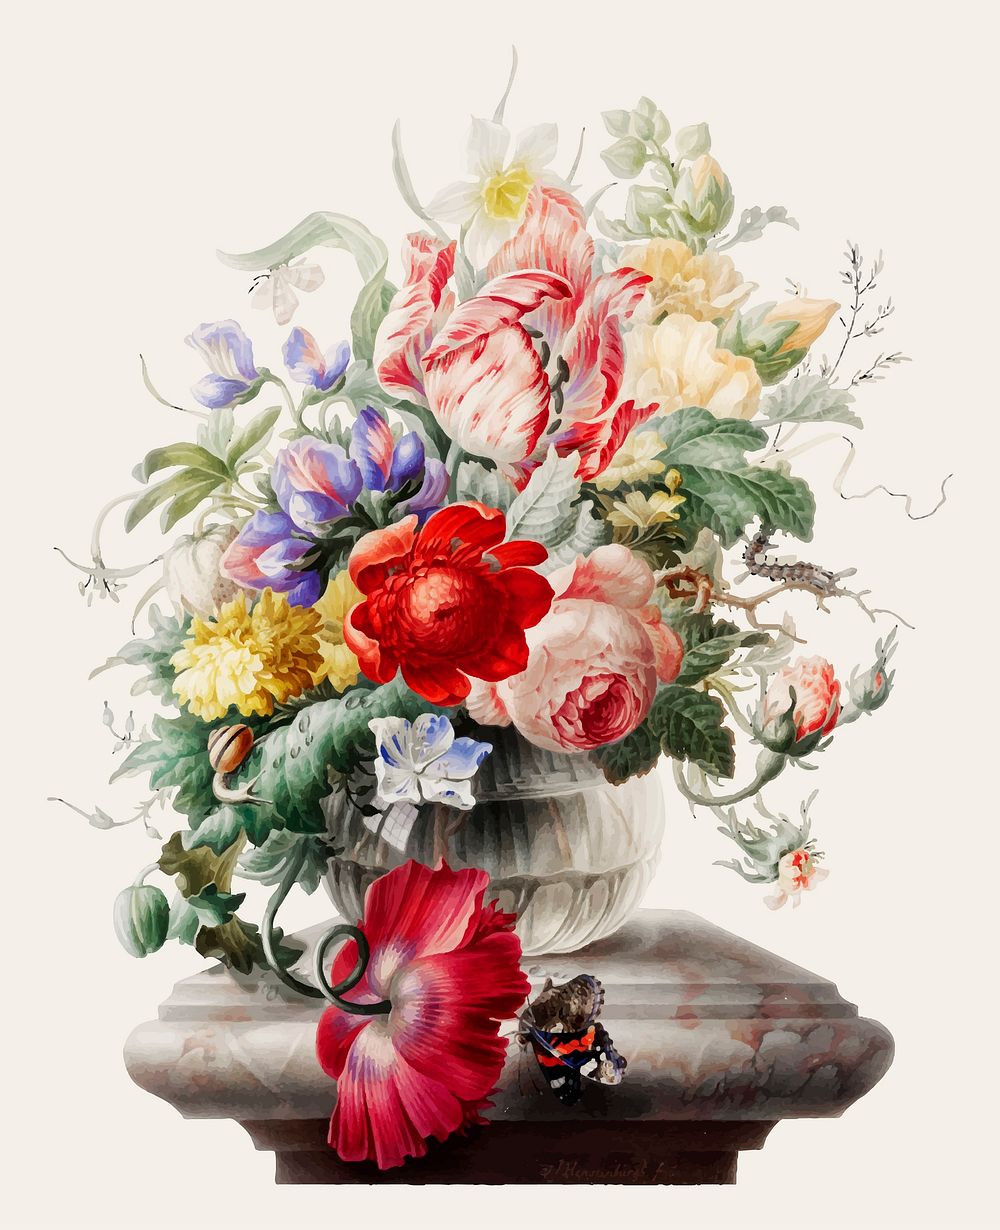 Vintage illustration of Flowers in a glass vase